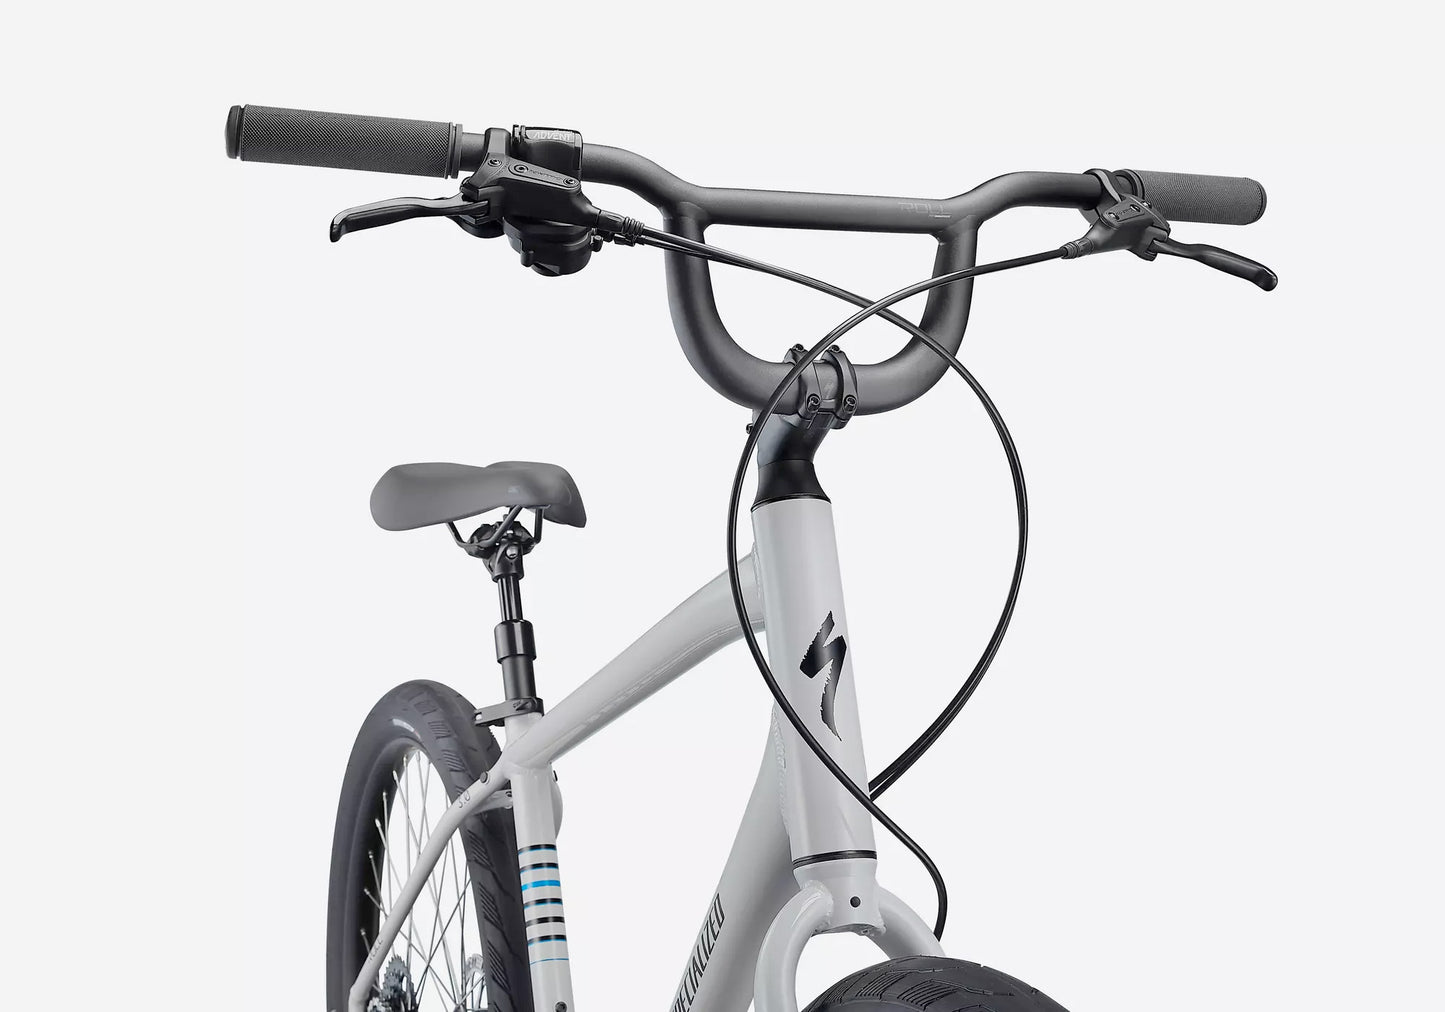 Specialized Roll 3.0 Unisex Fitness/Urban Bike - Gloss Dove Grey